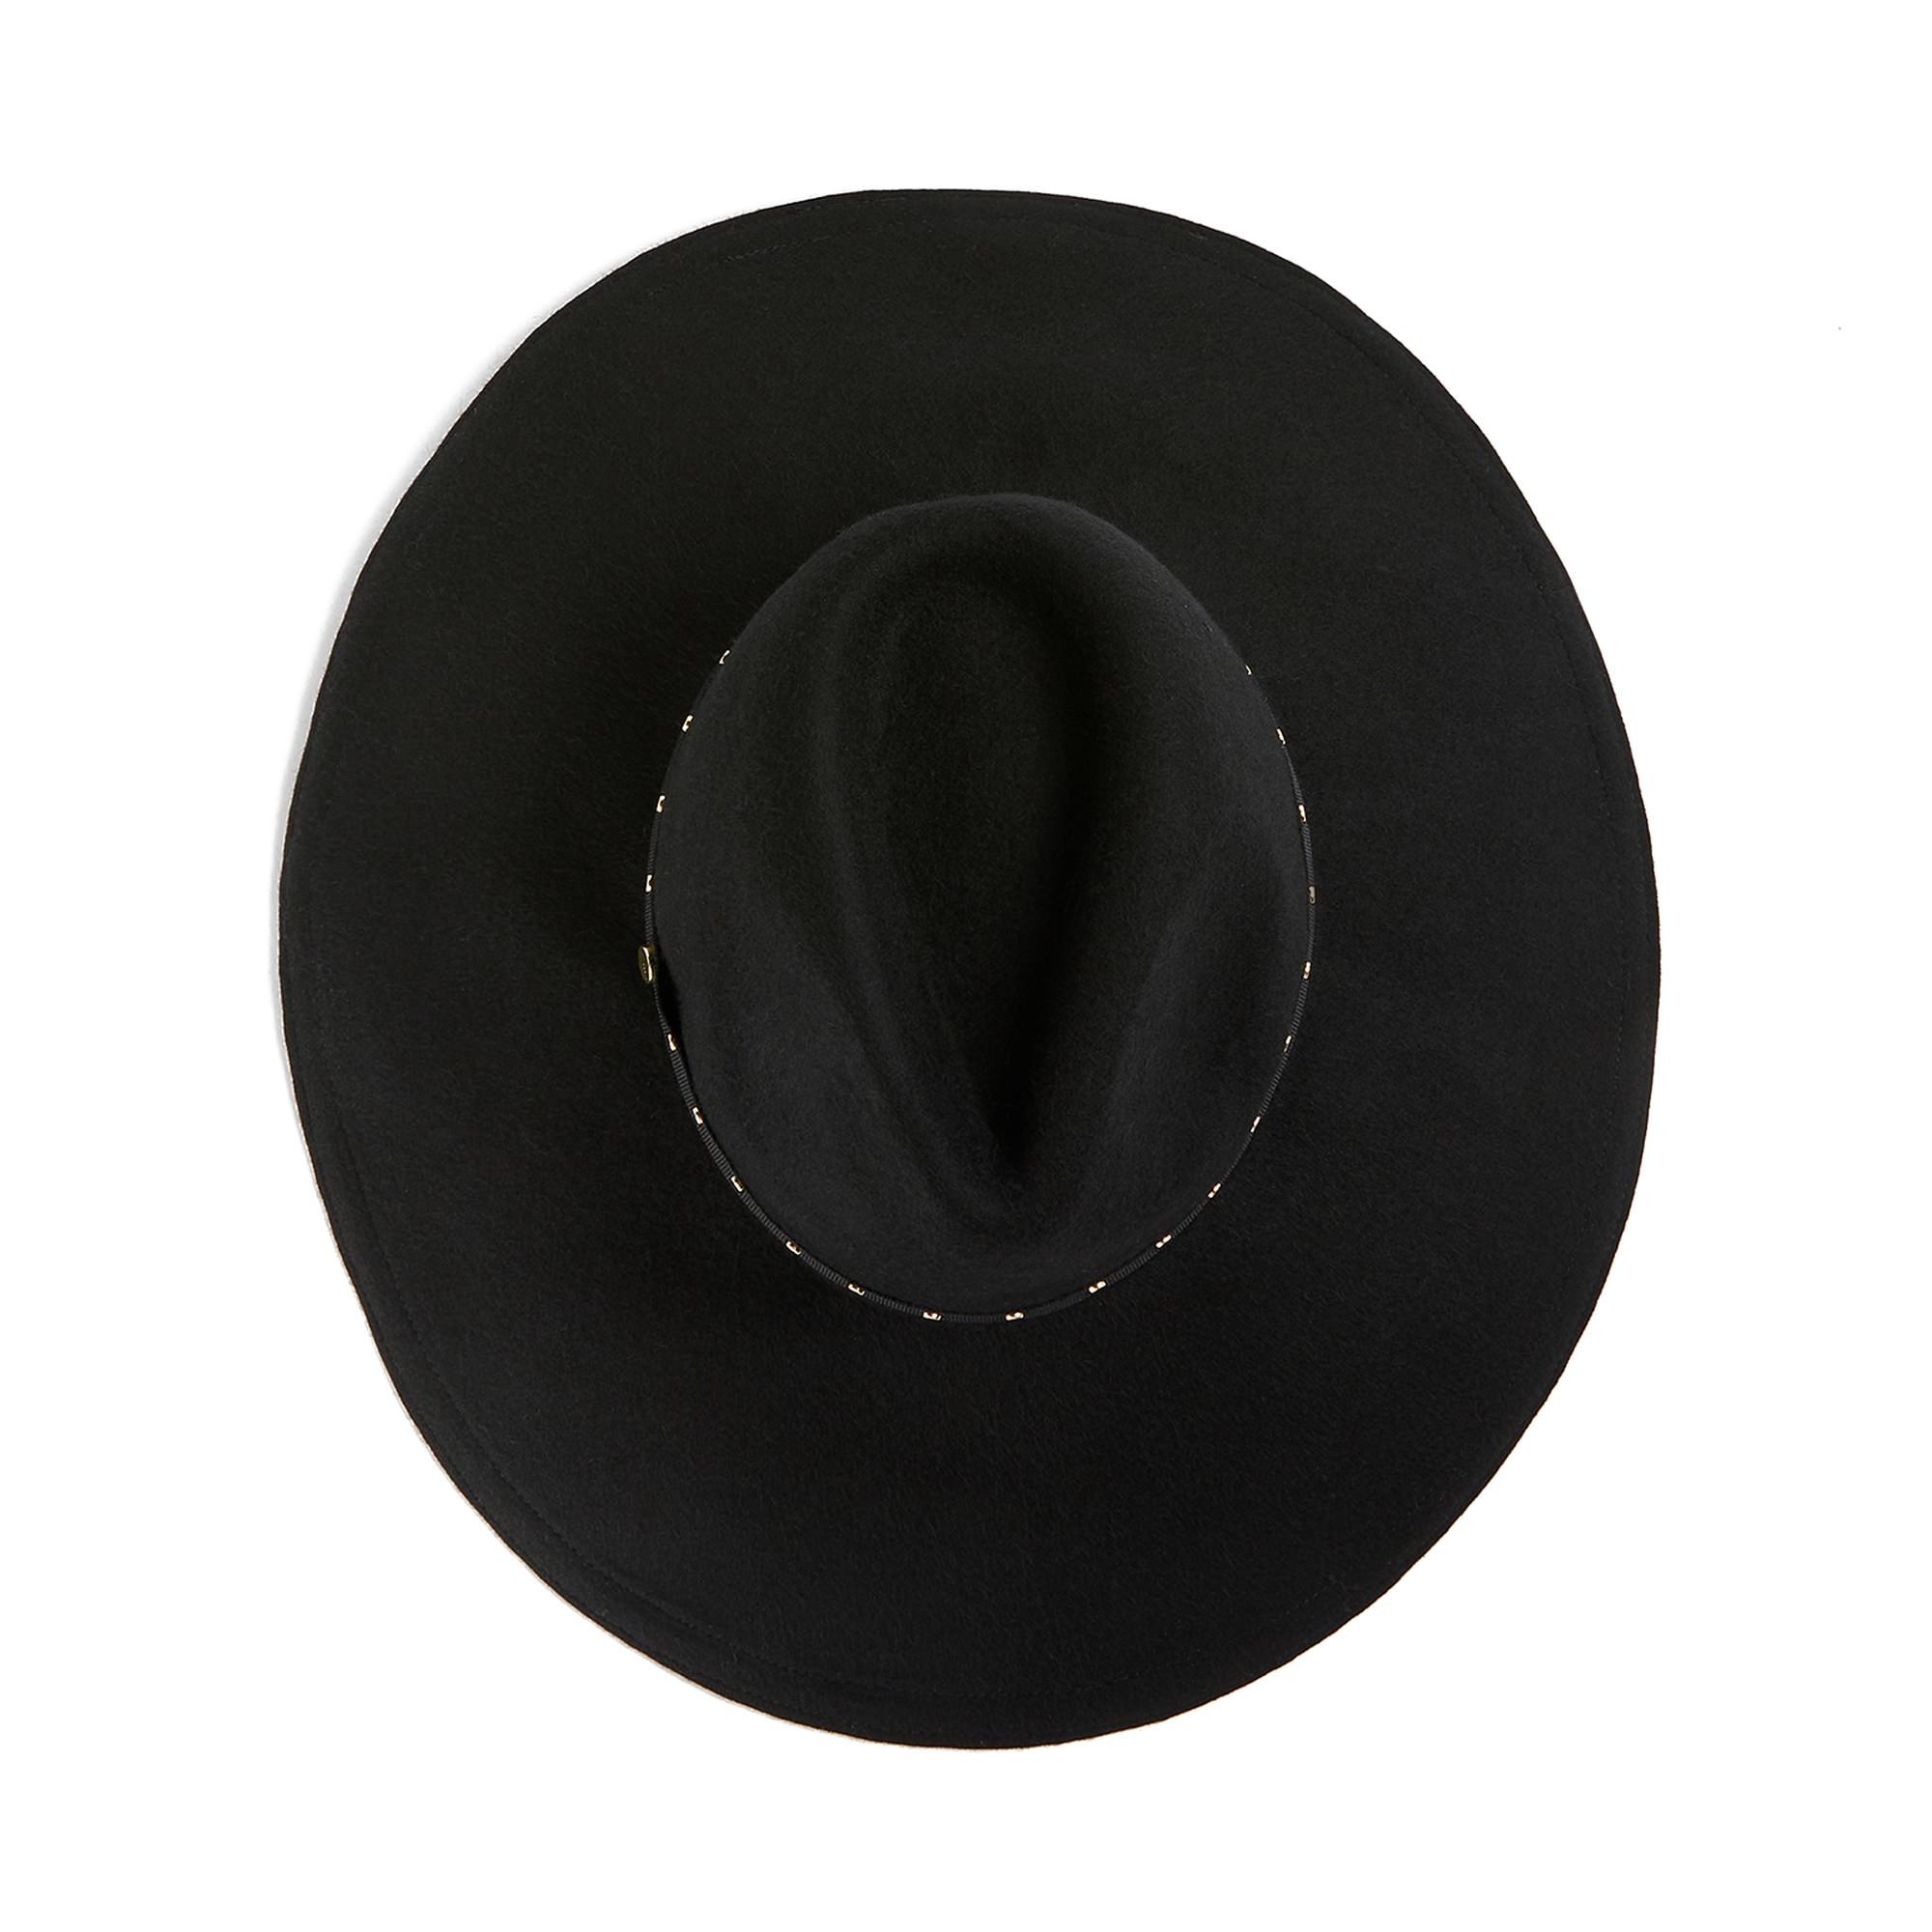 Rosieyy Stud Detail Wide Brim Hat